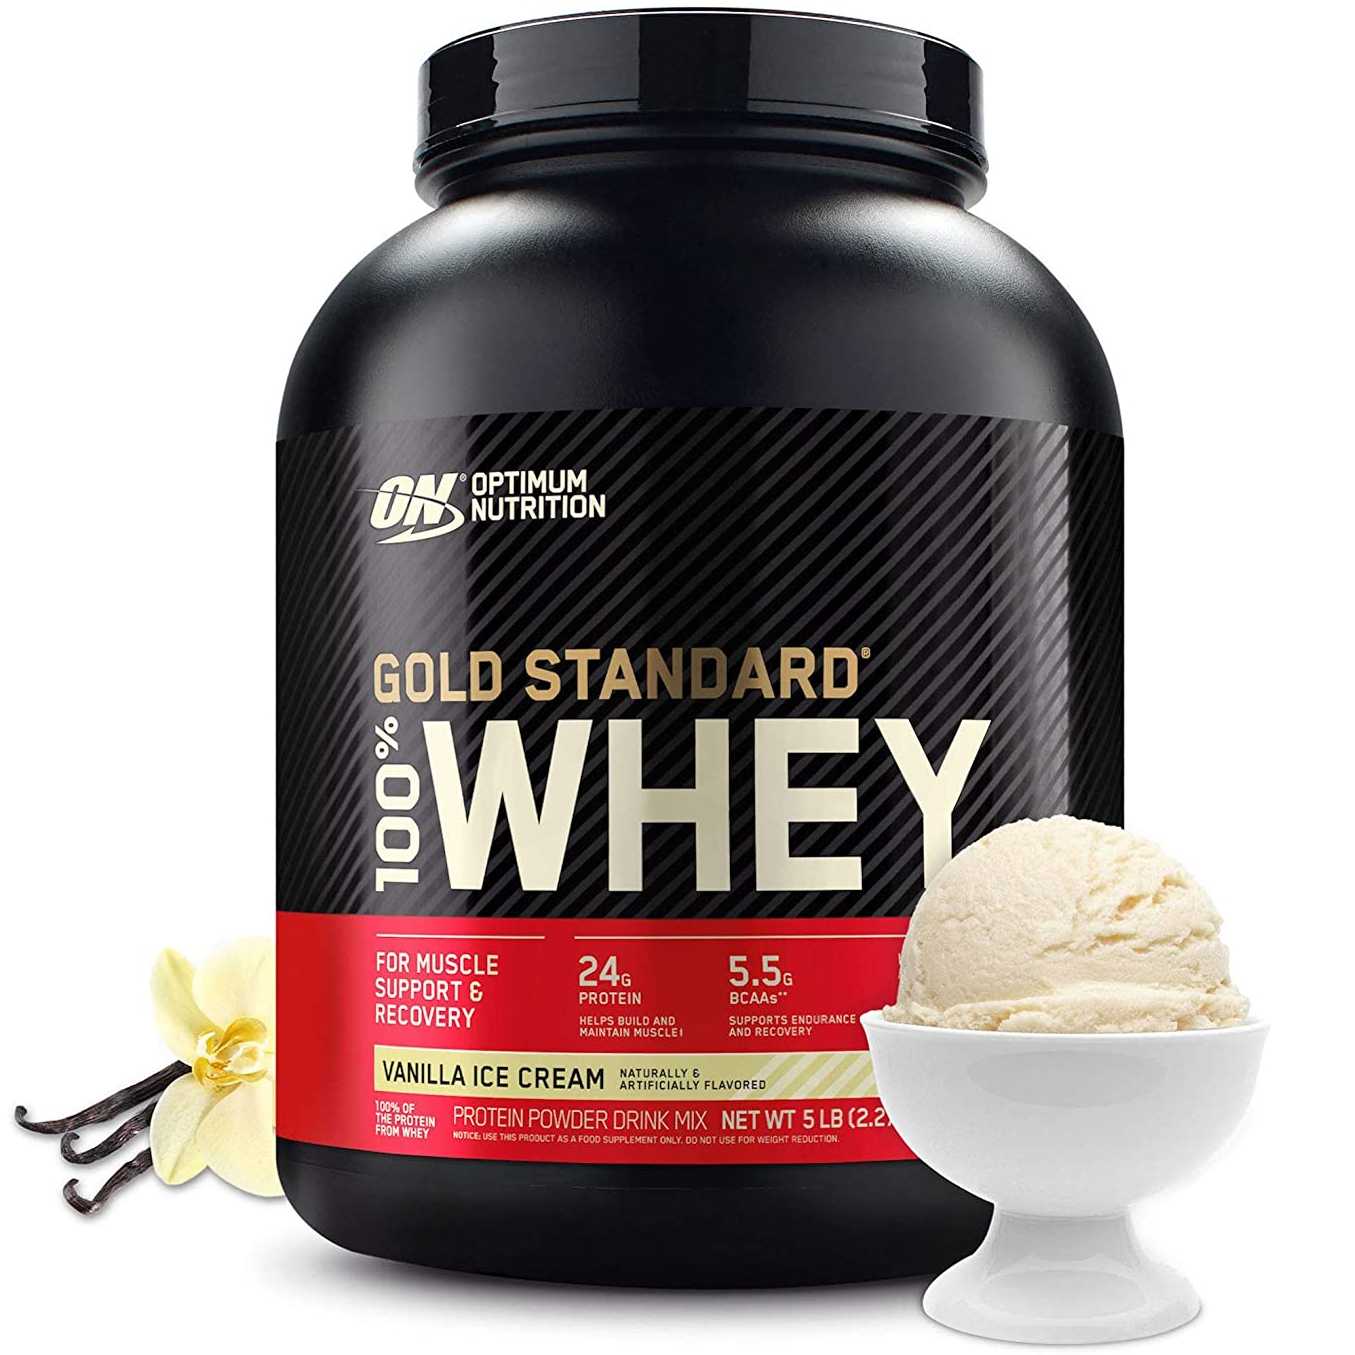 Optimum Nutrition 100% Whey Gold Standard (47 кг) - короткий но максимально информативный обзор Для большего удобства добавлены характеристики отзывы и видео